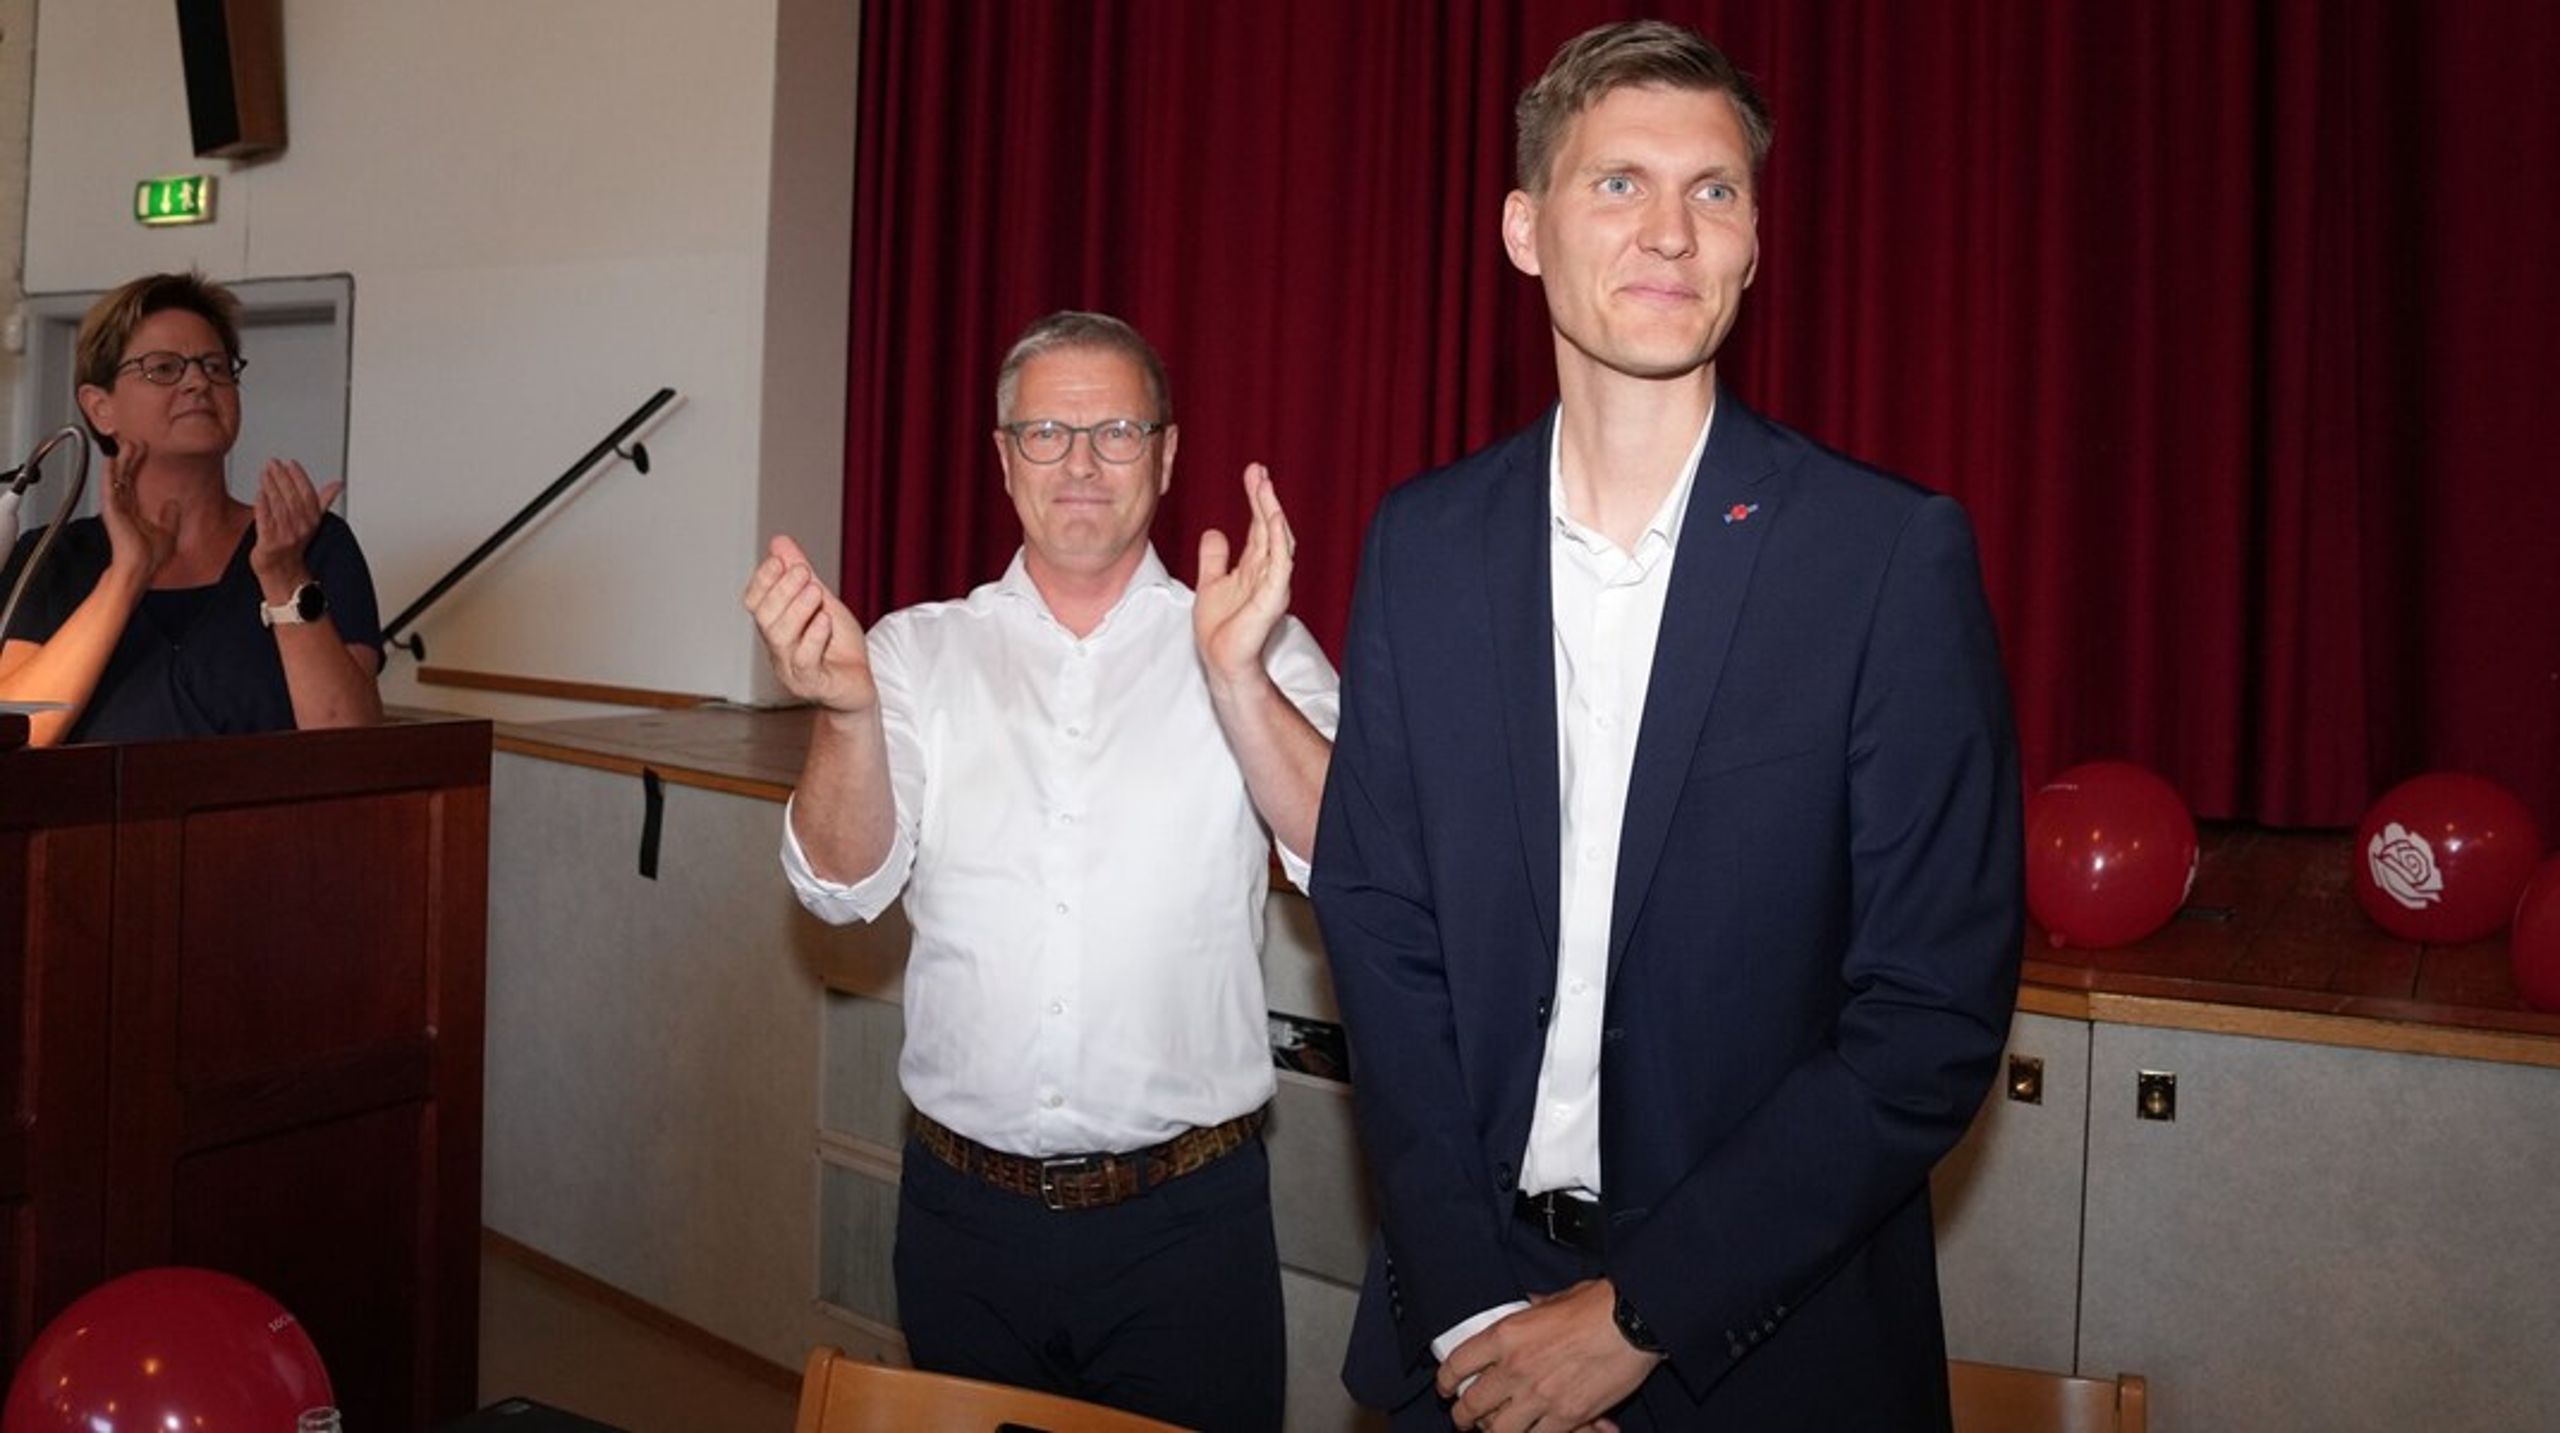 <div>De socialdemokratiske medlemmer af Socialdemokratiet i Aalborg afgjorde Tirsdag aften, at Thomas Frimand Jensen bliver kommunens nye borgmester.</div>